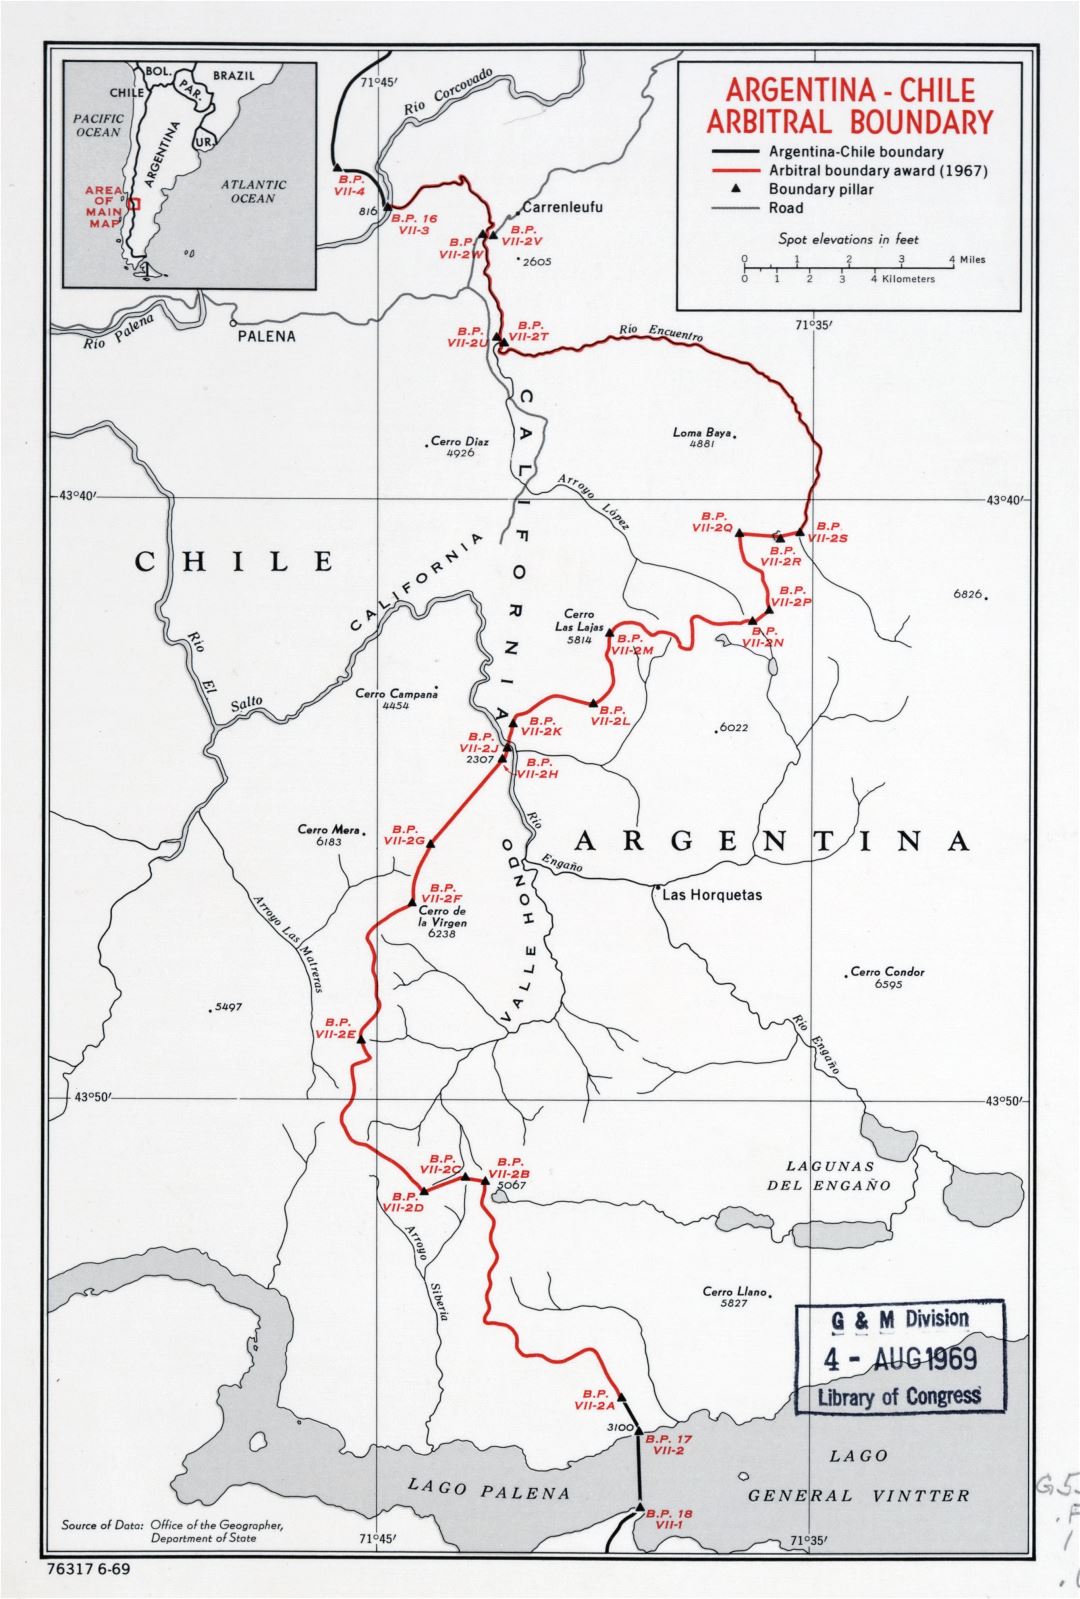 Большая детальная карта арбитражных границ Аргентины-Чили - 1969